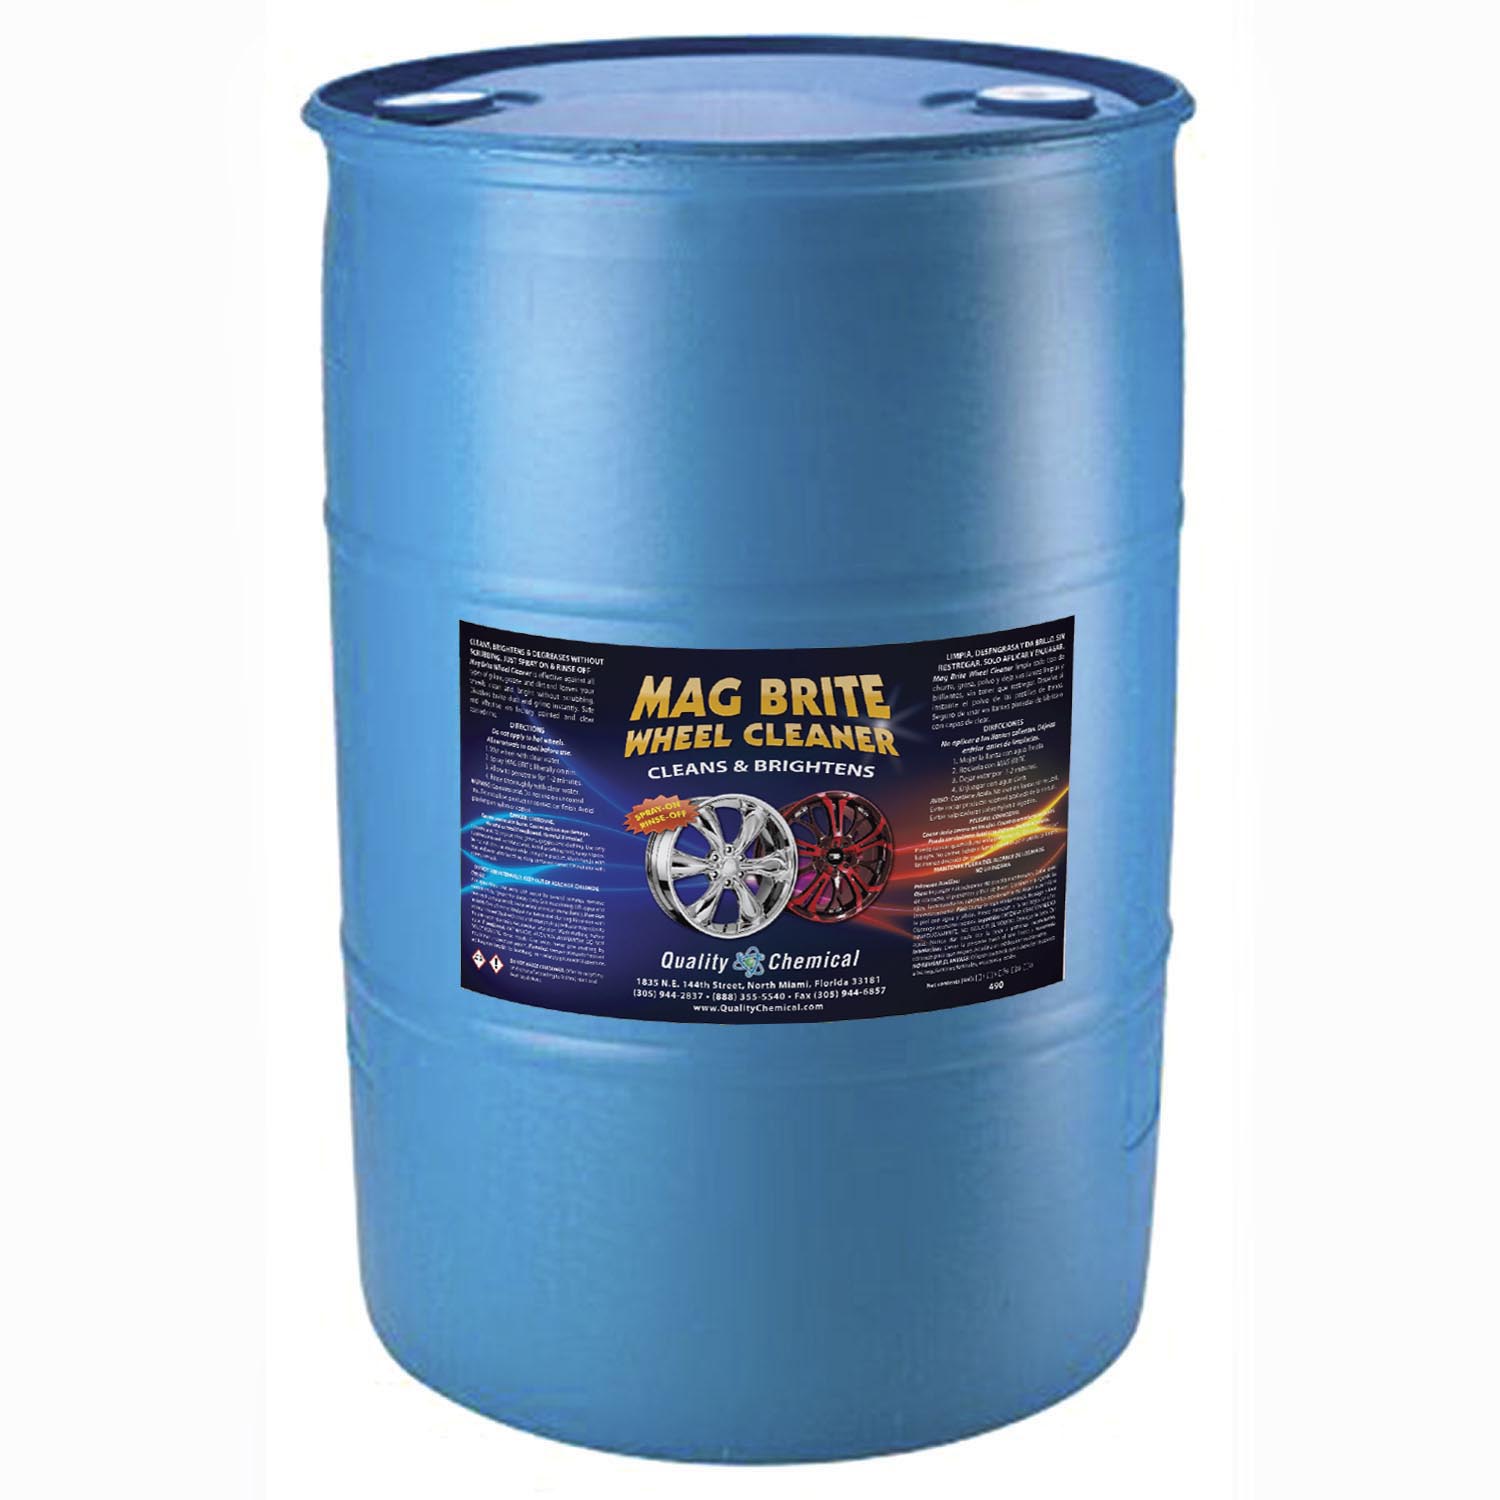  Quality Chemical Mag Brite/Acid - Limpiador de ruedas y llantas/ limpiador de llantas y neumáticos - Formulado para eliminar de forma segura  el polvo de frenos y la película de carretera pesada 